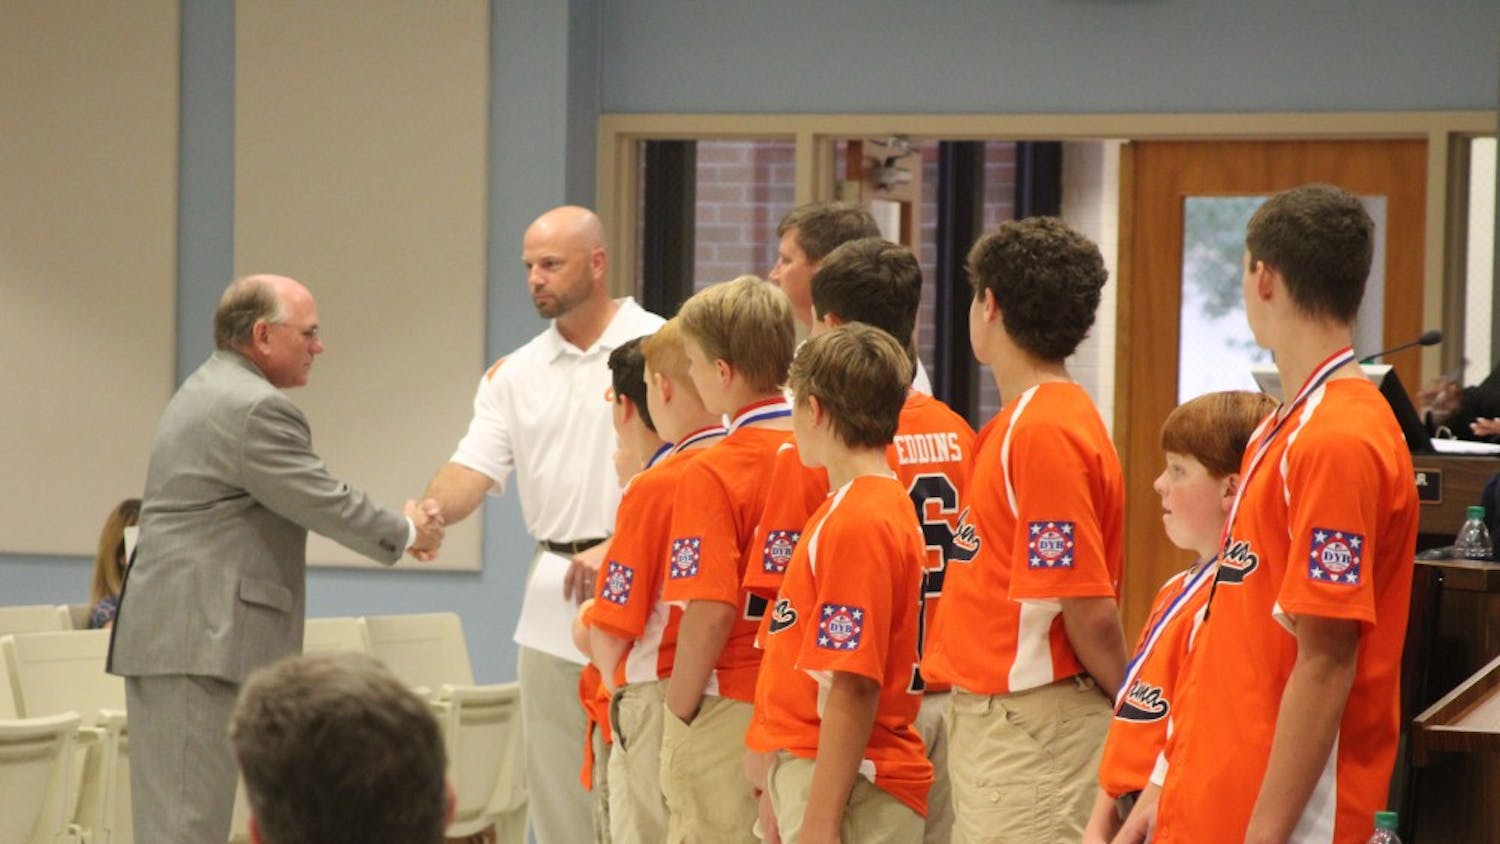 Mayor Bill Ham congratulates the&nbsp;Auburn Orange Dixie Youth baseball team at the city council meeting on Tuesday, Aug. 21, 2018, in Auburn, Ala.&nbsp;